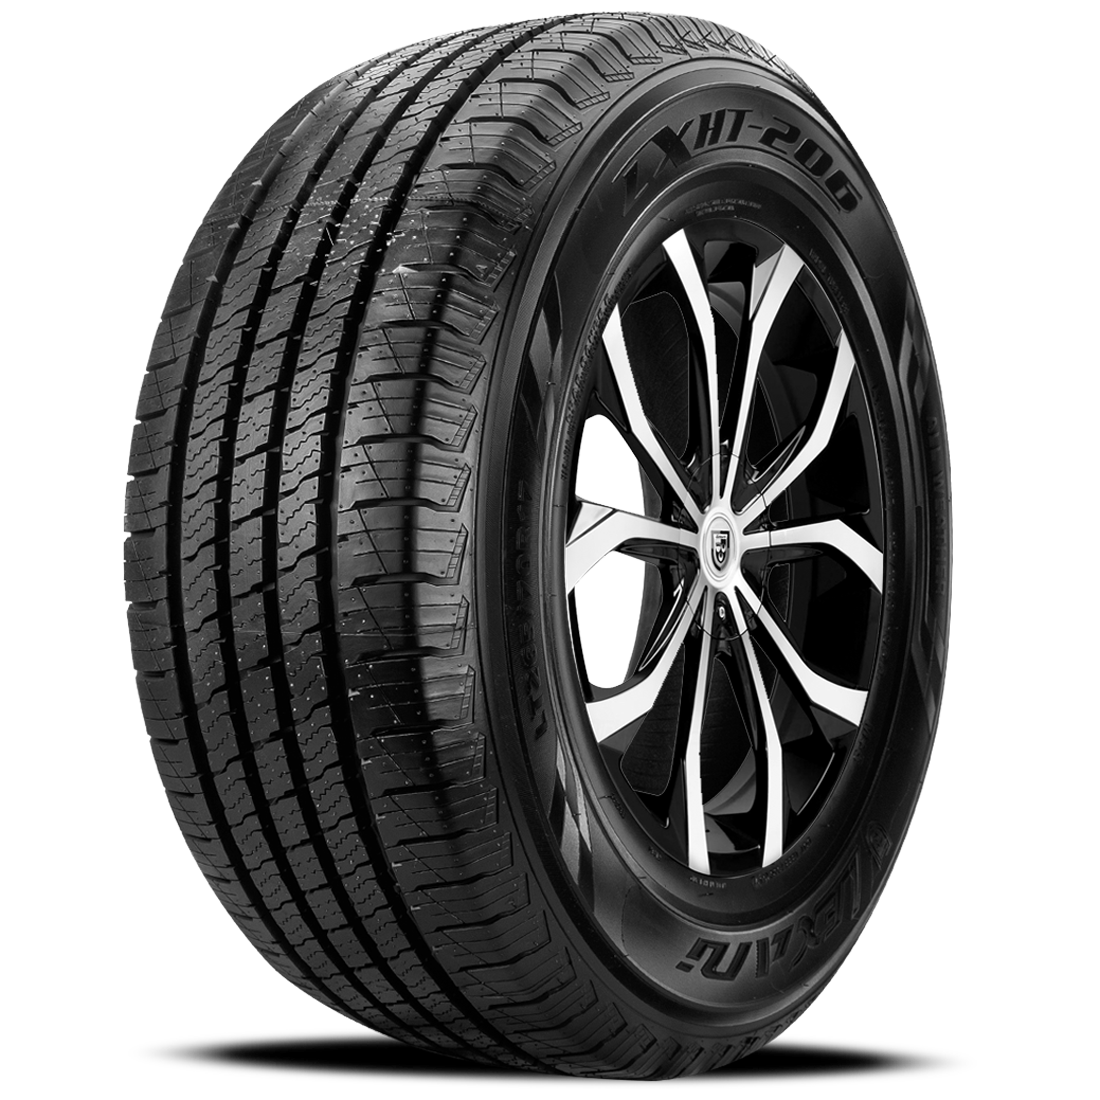 LEXANI LXHT-206 P245/65R17 (29.5X9.7R 17) Tires